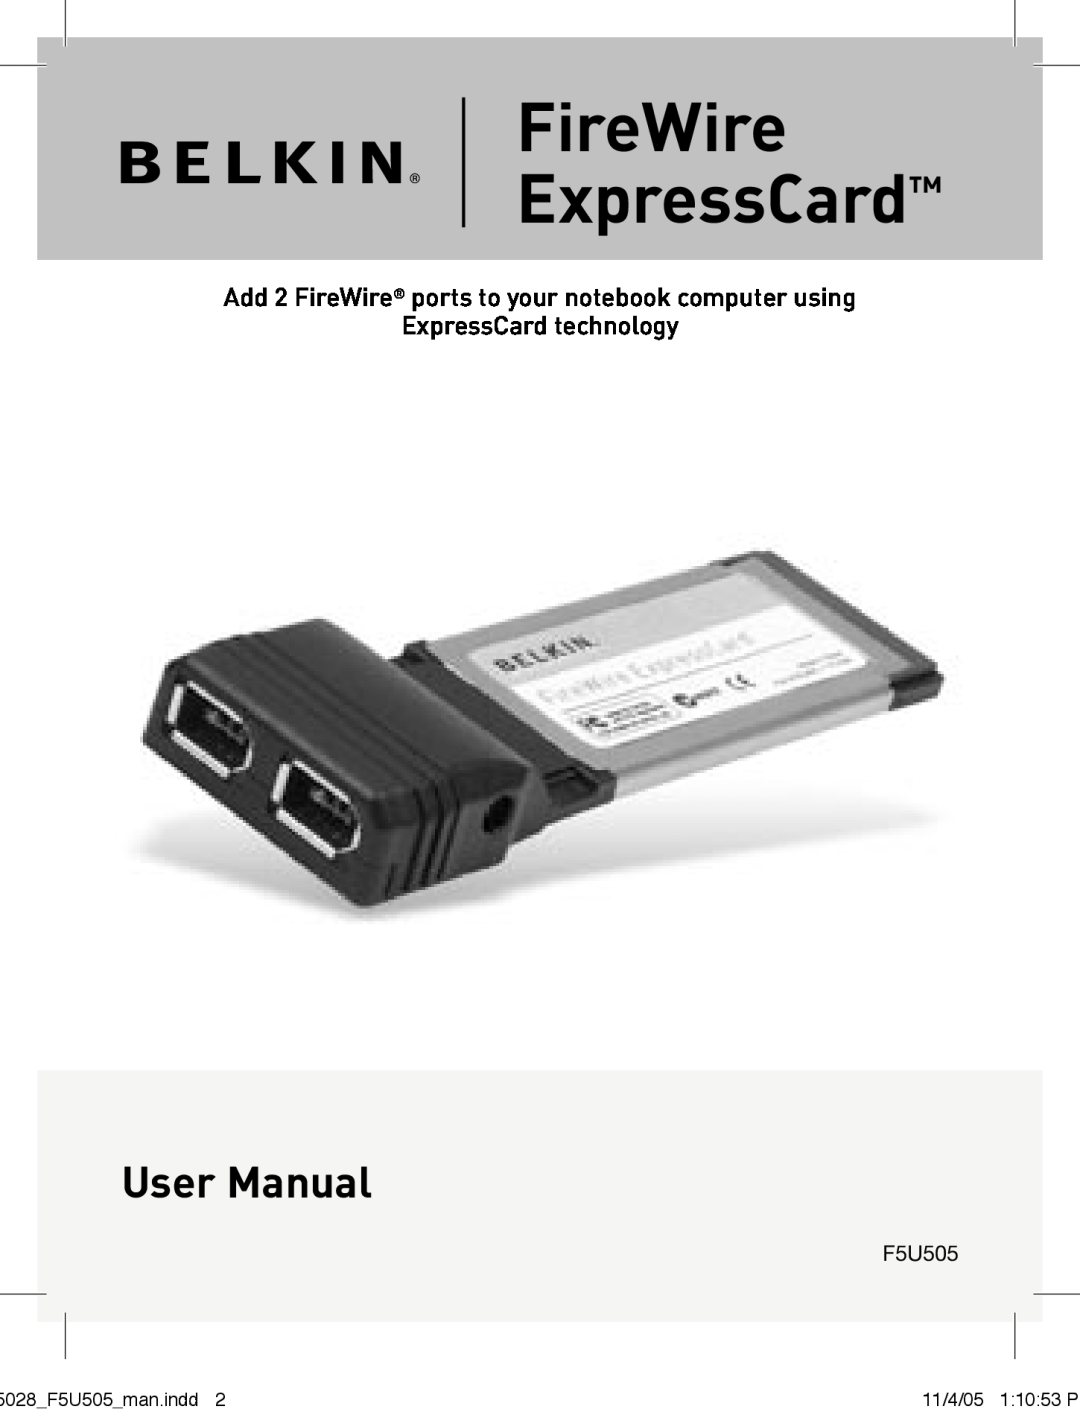 Belkin F5U505 manual FireWire ExpressCard, User Manual 